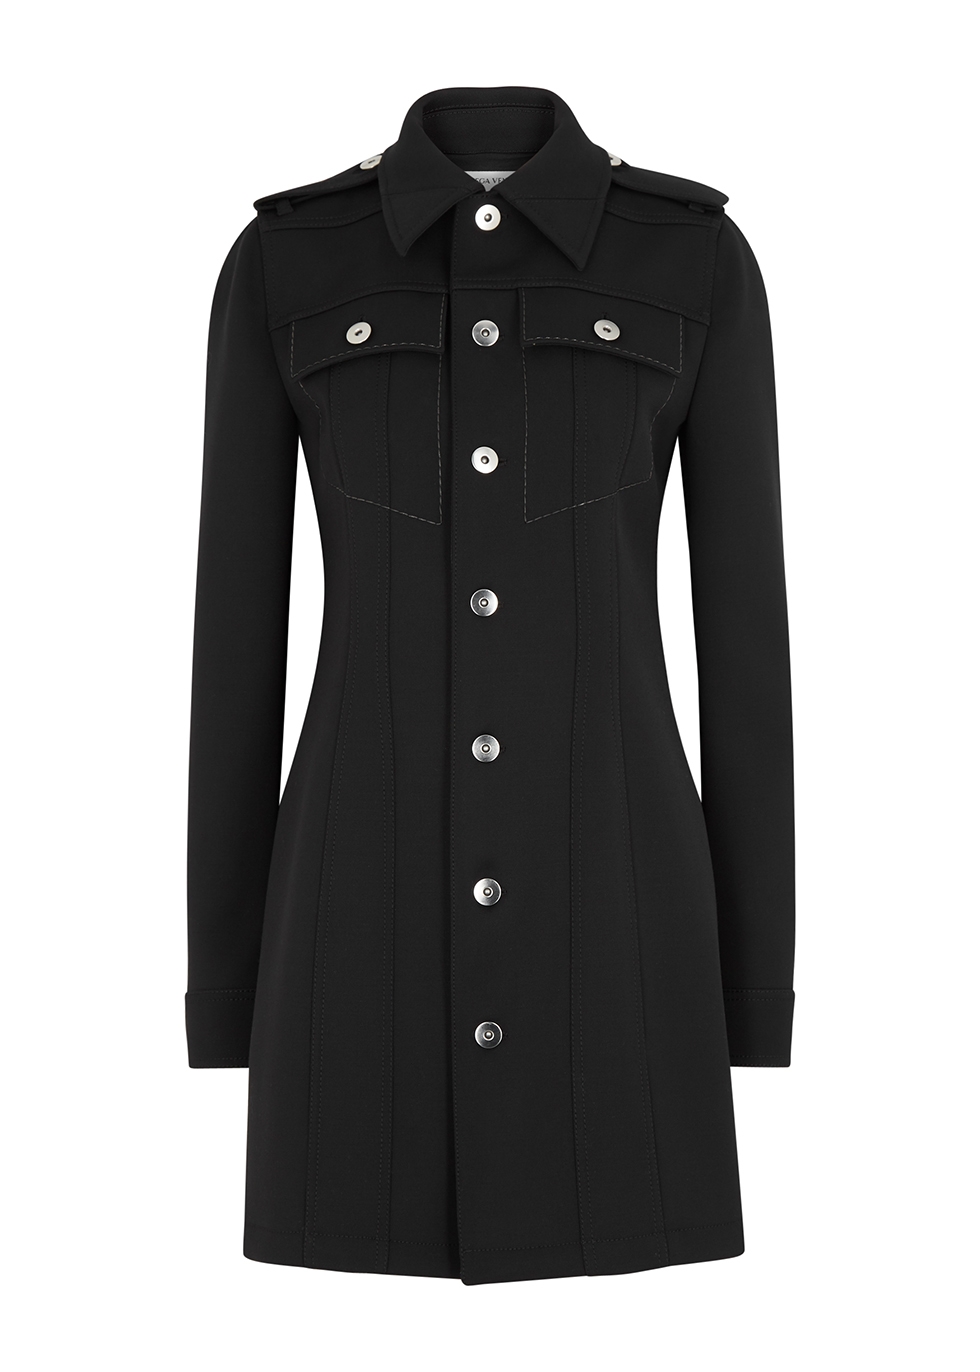 Black wool-blend shirt dress